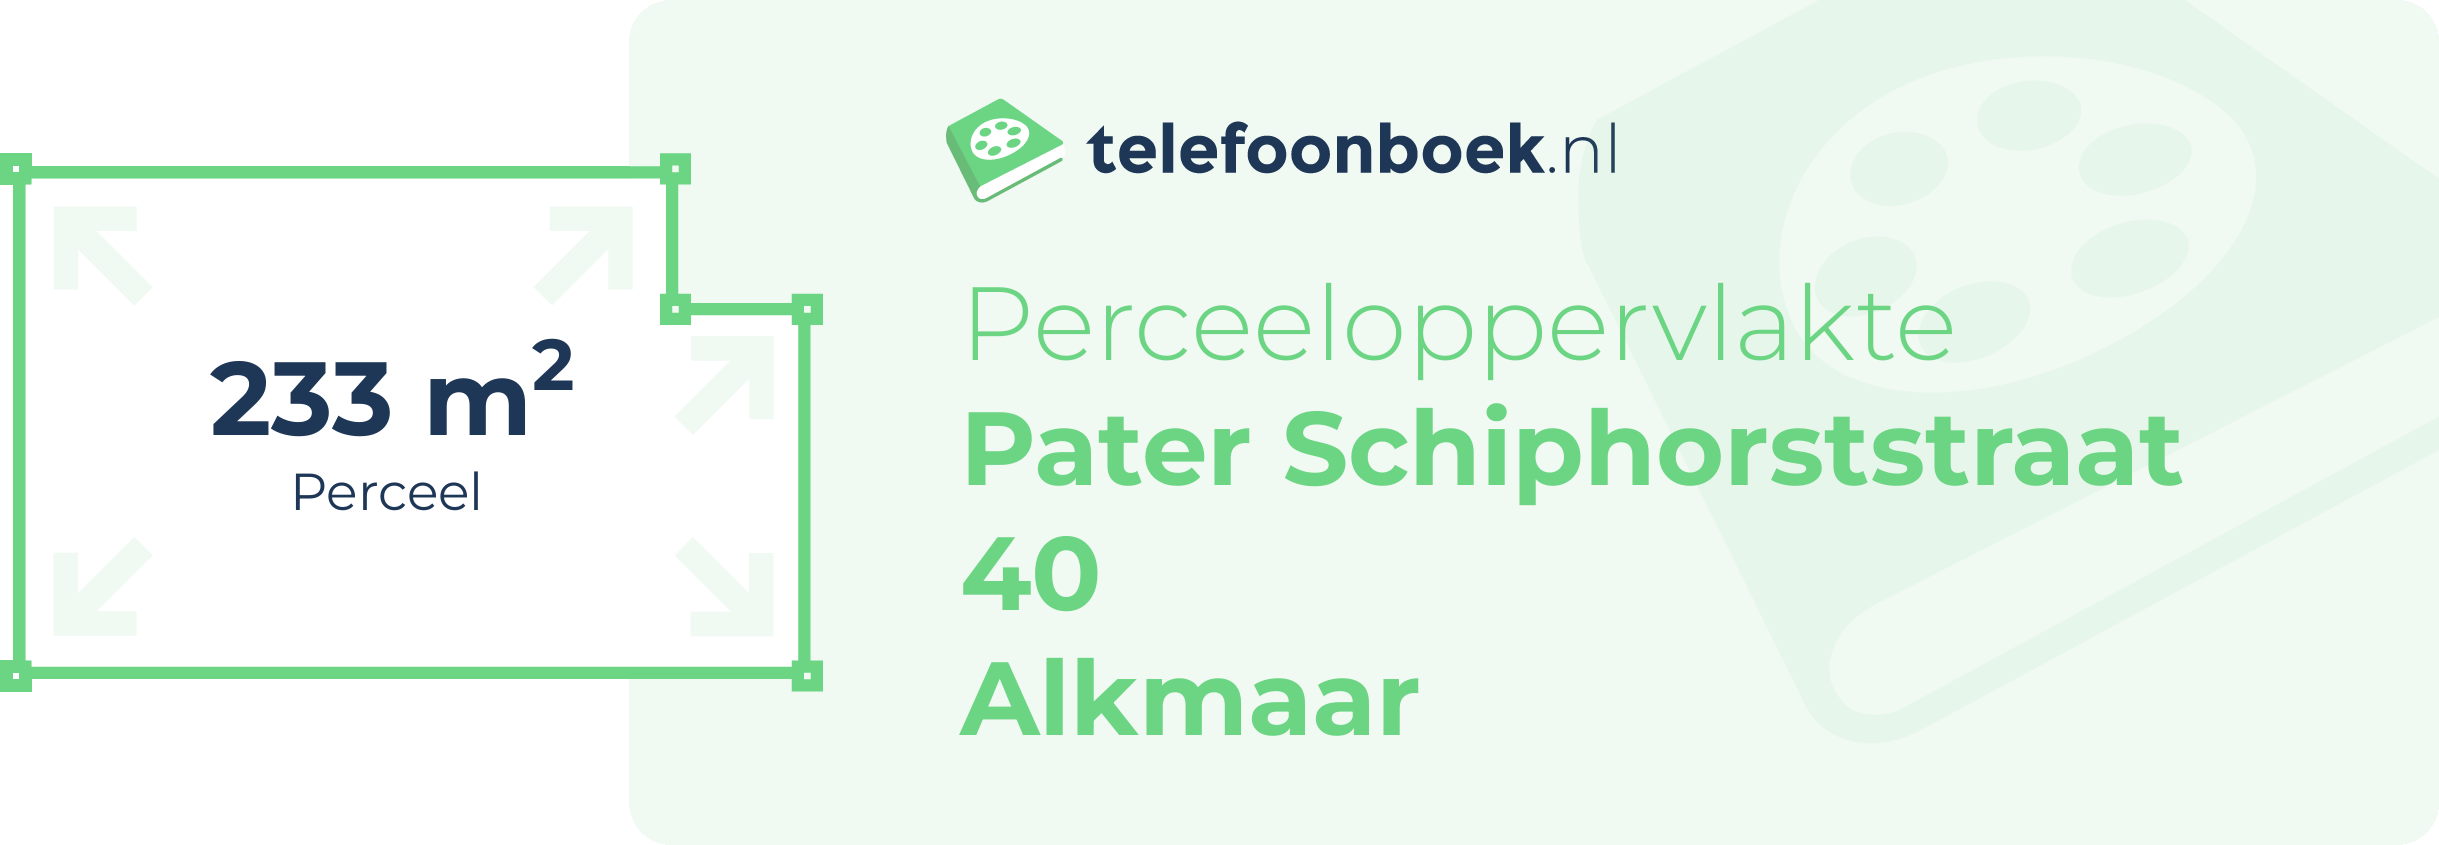 Perceeloppervlakte Pater Schiphorststraat 40 Alkmaar